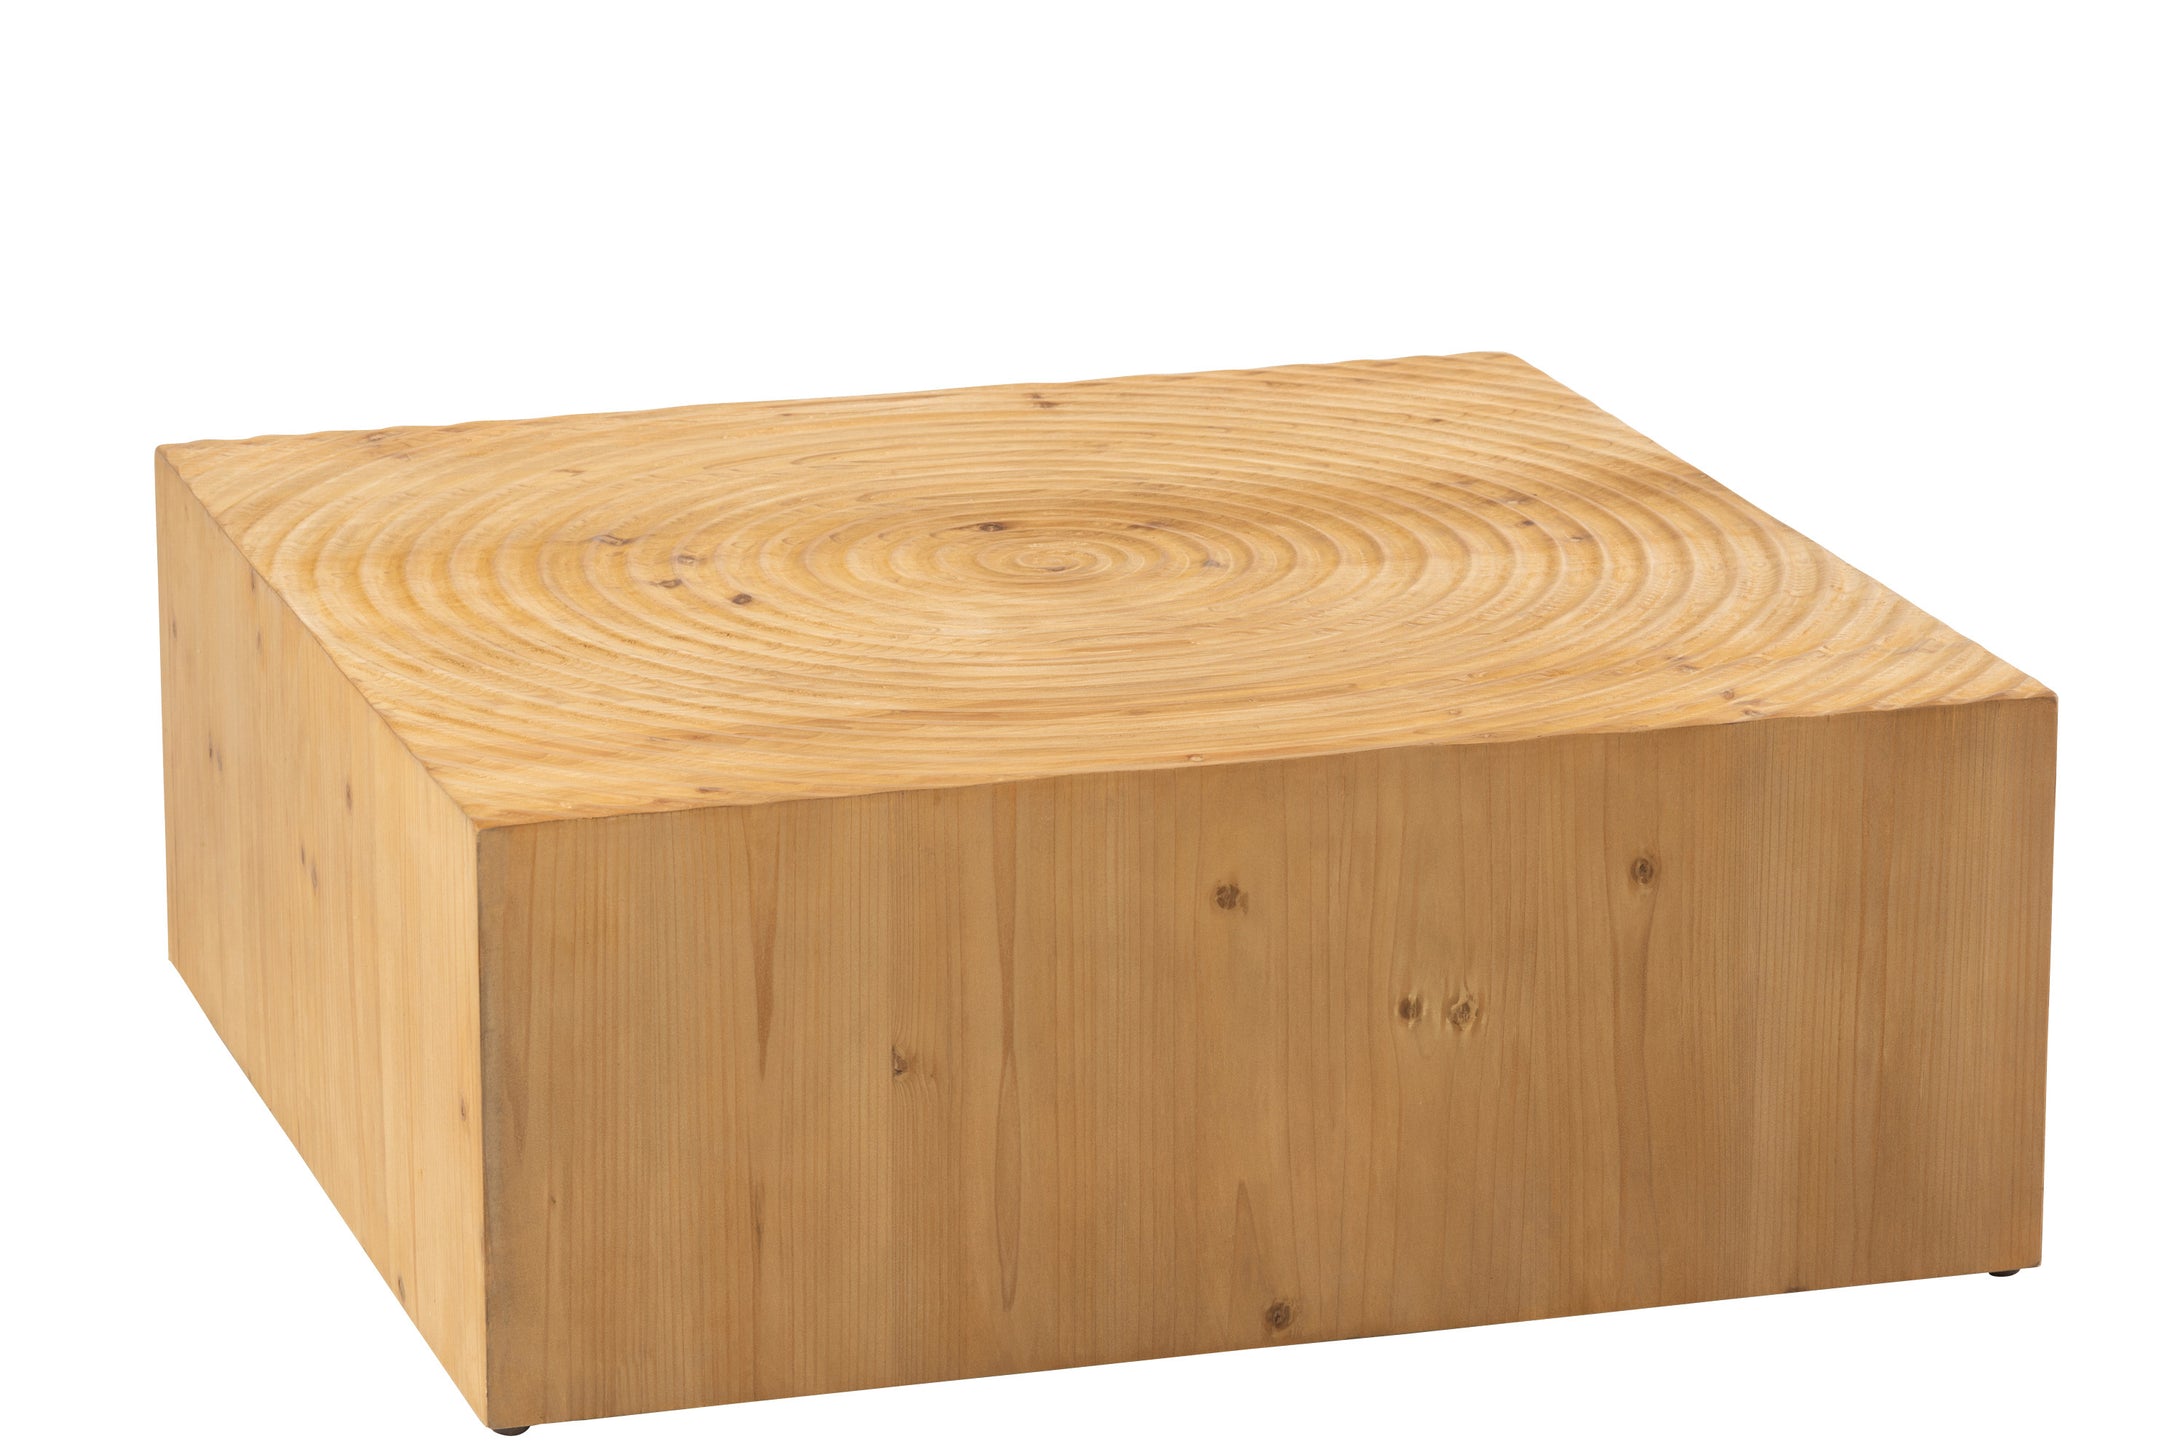 Couchtisch aus Fichtenholz natur im Design eines großen  Holzblocks, Höhe 30 cm, Oberfläche quadratisch (80 cm), mit eingefrästen Kreisen.